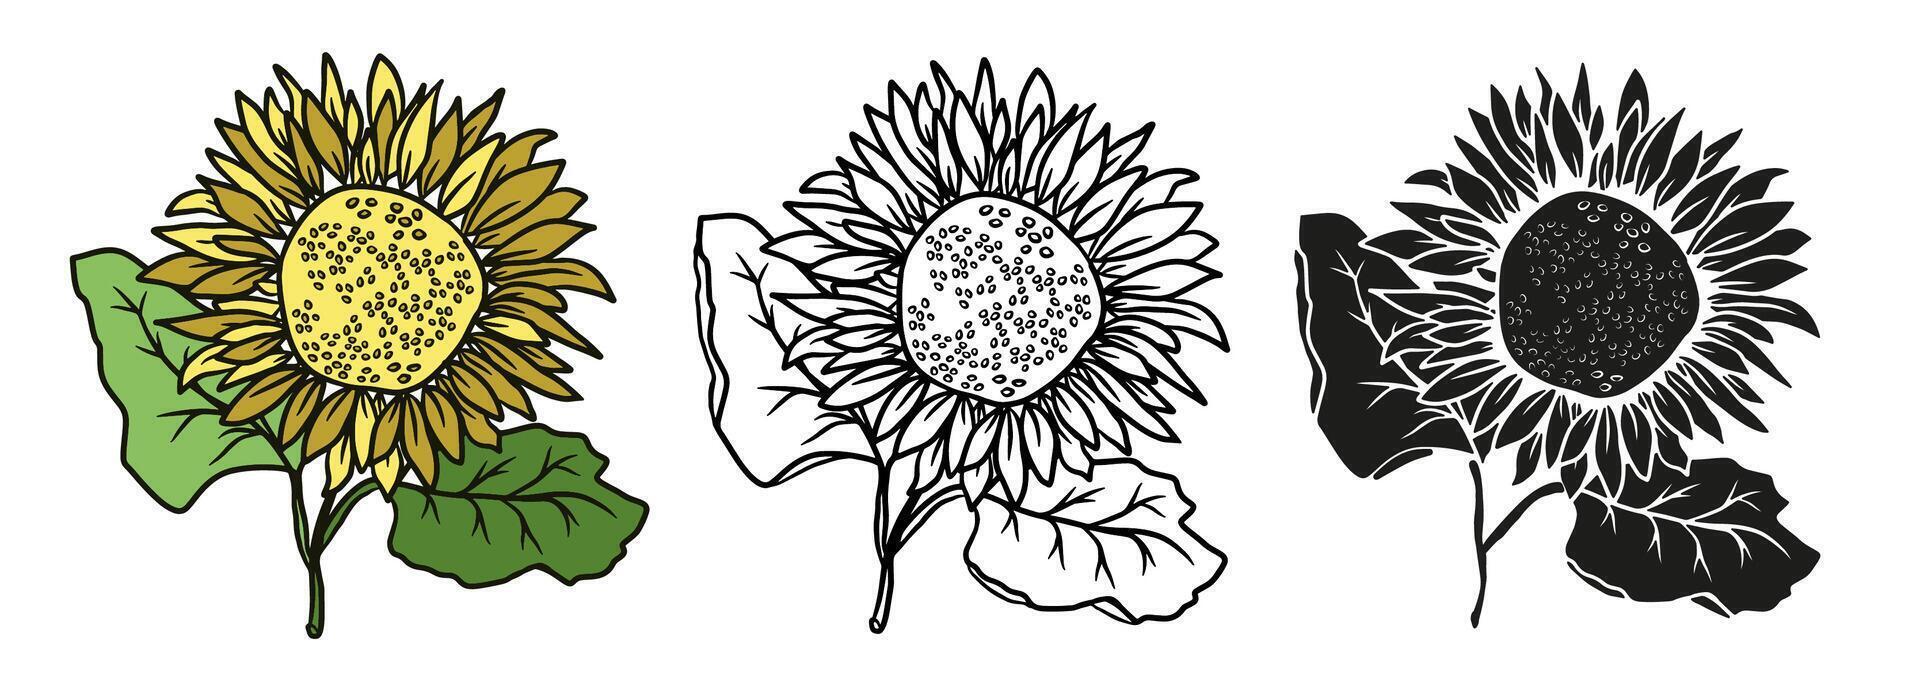 girasol mano dibujado ilustración en color para diseño colocar. vector garabatear floral elementos